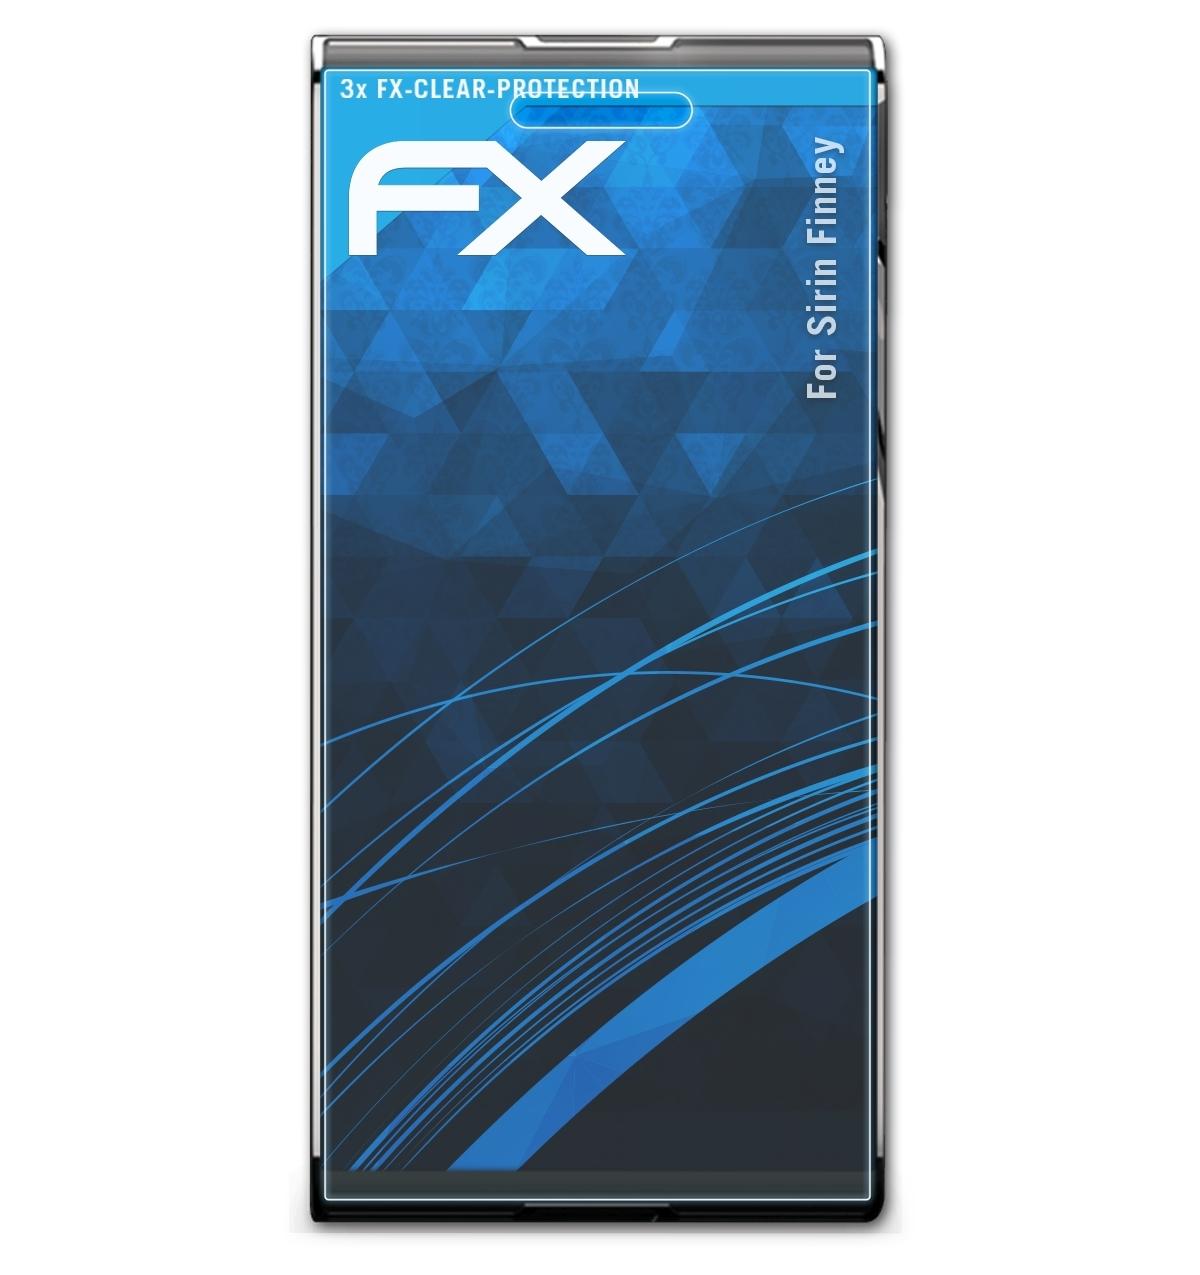 ATFOLIX 3x FX-Clear Displayschutz(für Finney) Sirin